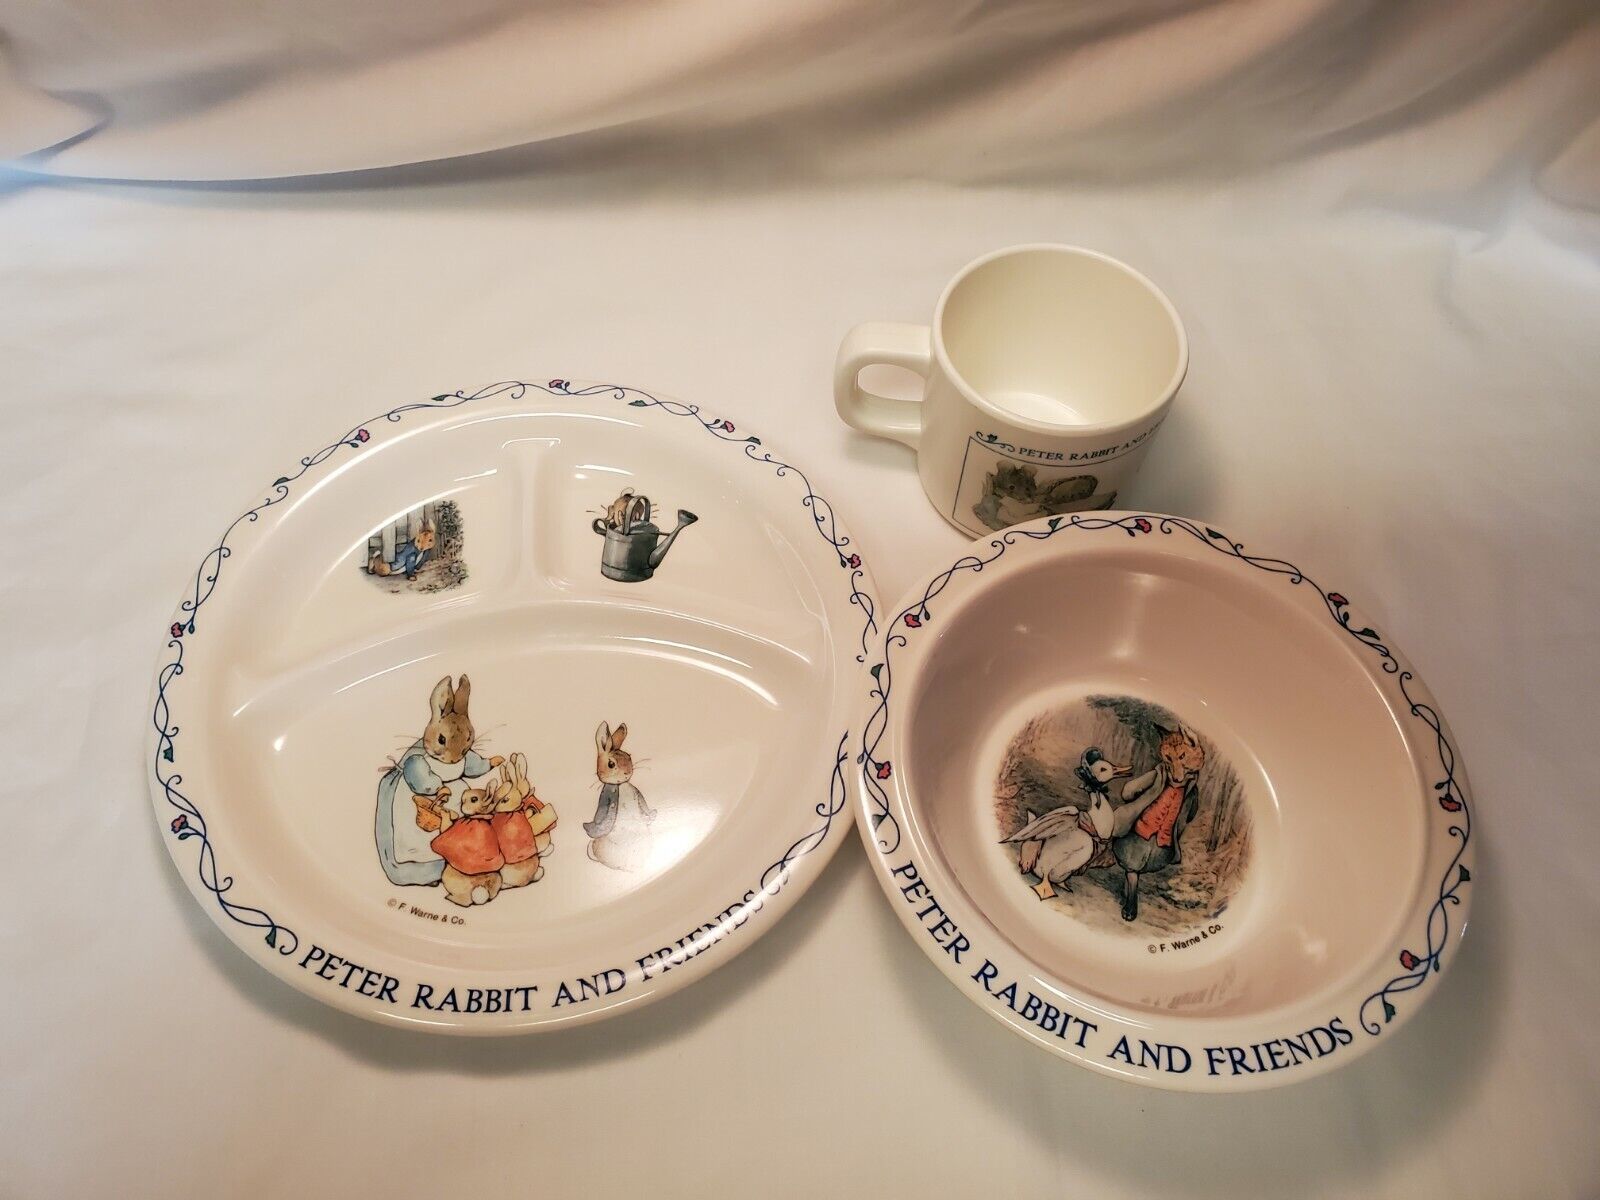 Beatrix Potter Peter Rabbit And Friends 3 Piece Melamine Dish Set Plate Bowl Cup